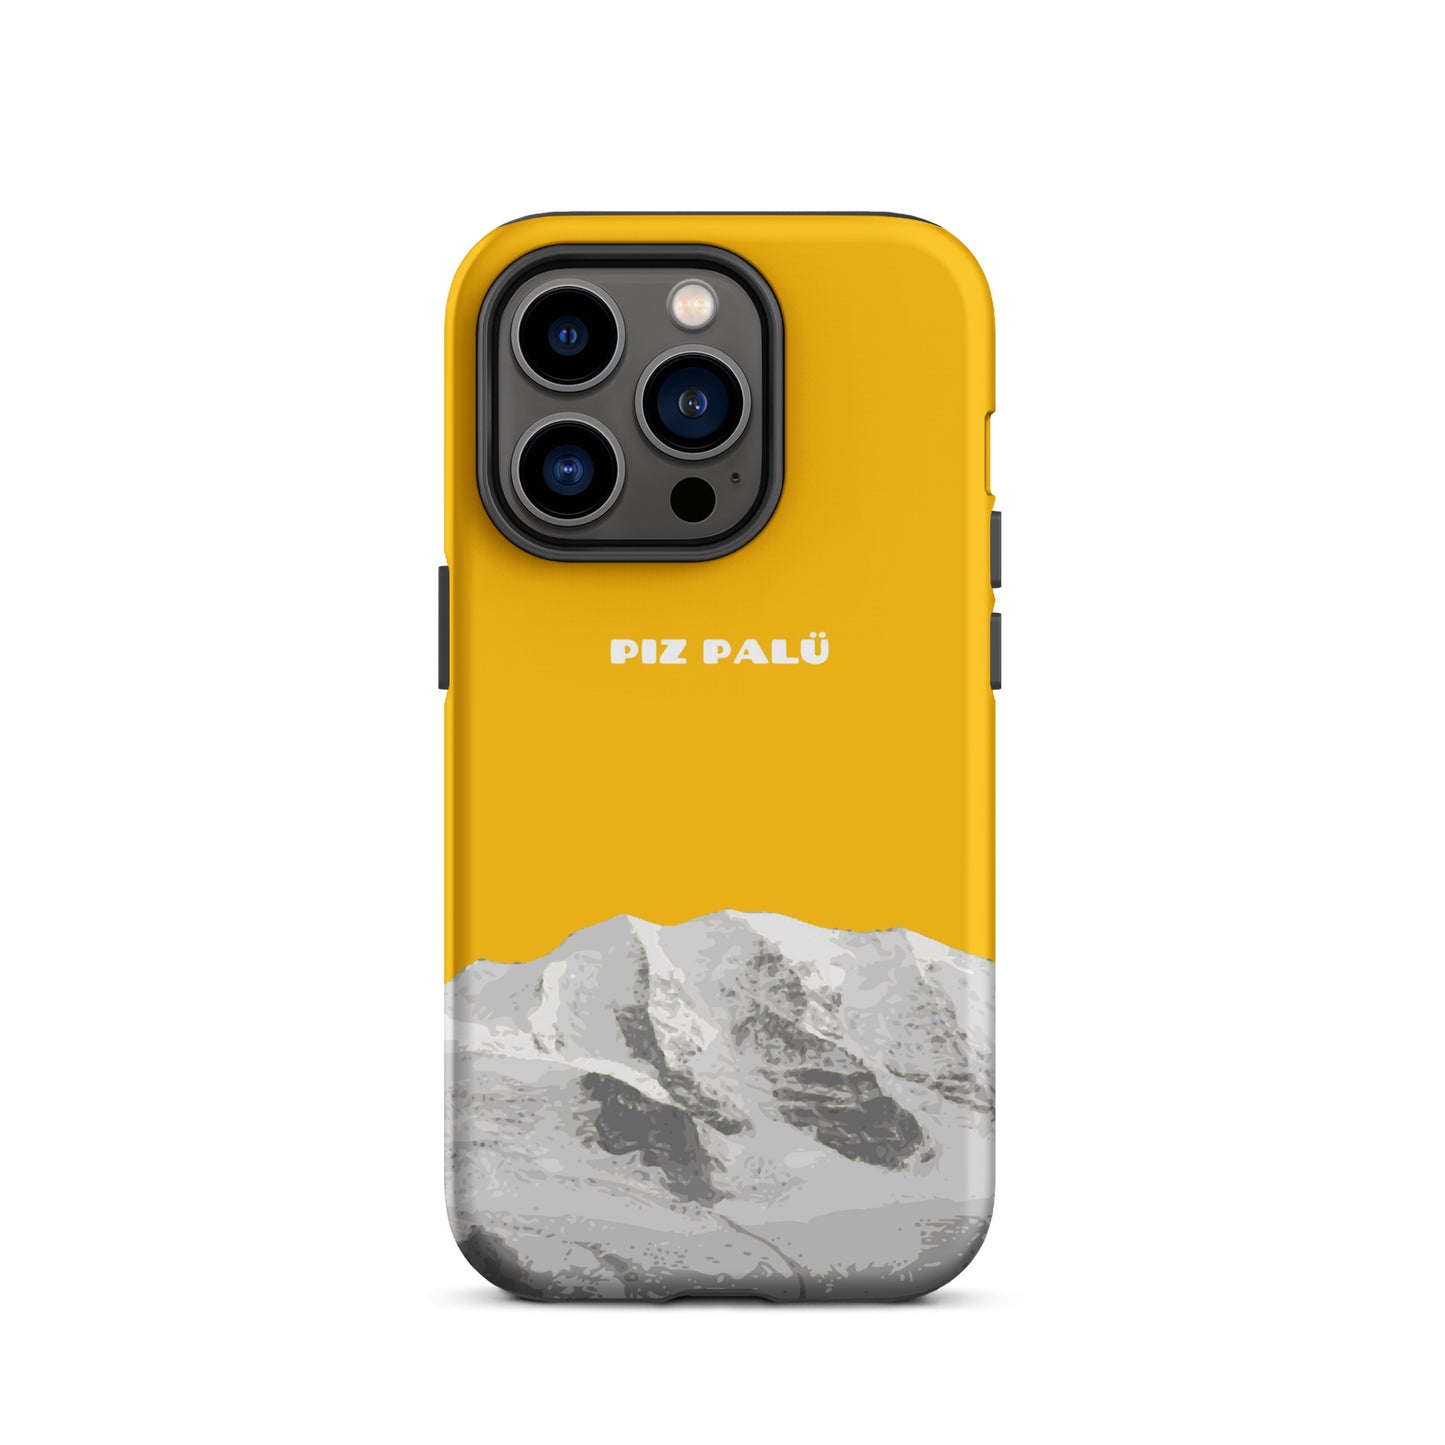 Hülle für das iPhone 14 Pro von Apple in der Farbe Goldgelb, dass den Piz Palü in Graubünden zeigt.